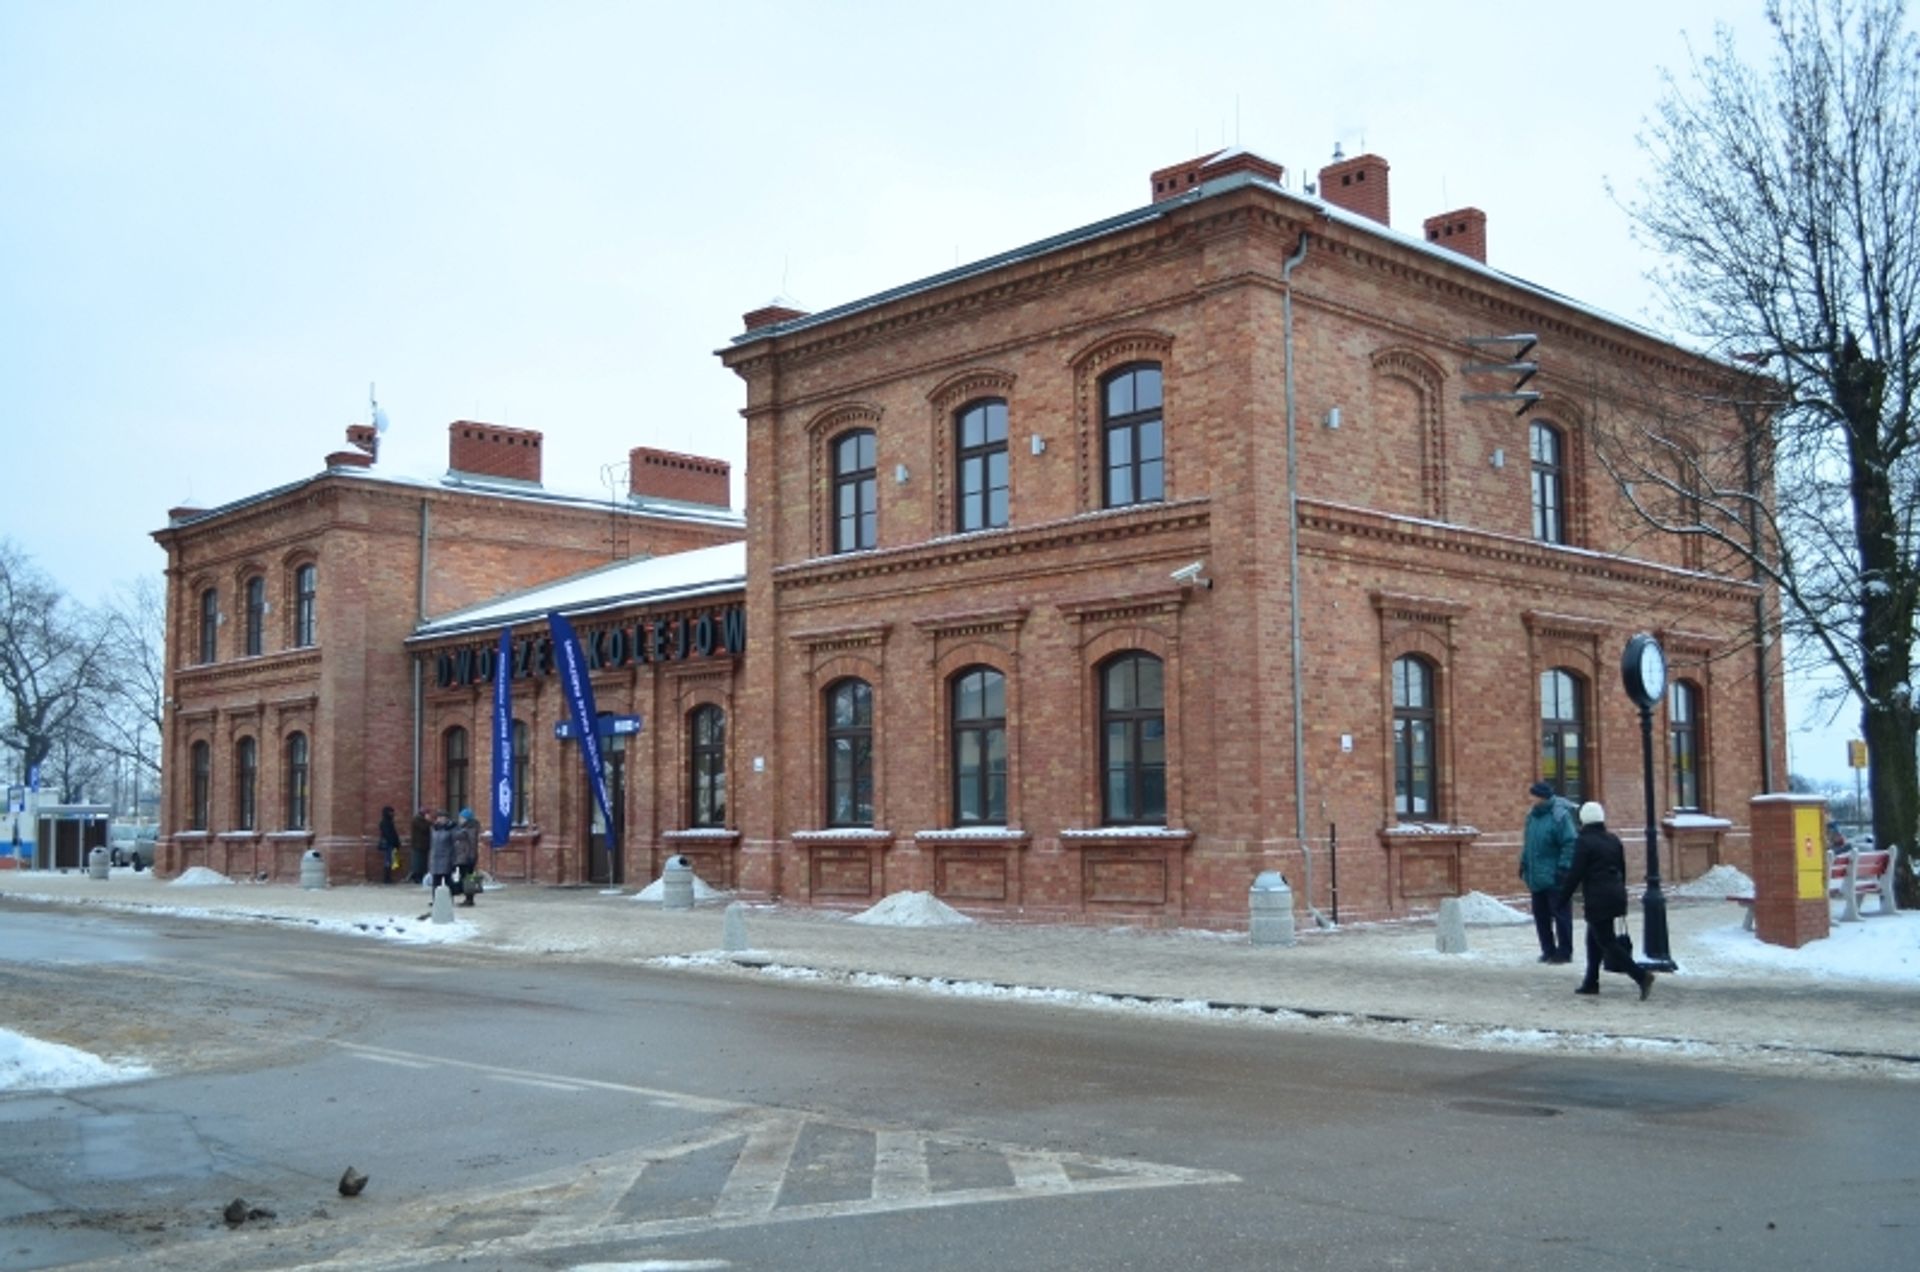  Dworzec w Myszkowie otwarty dla podróżnych